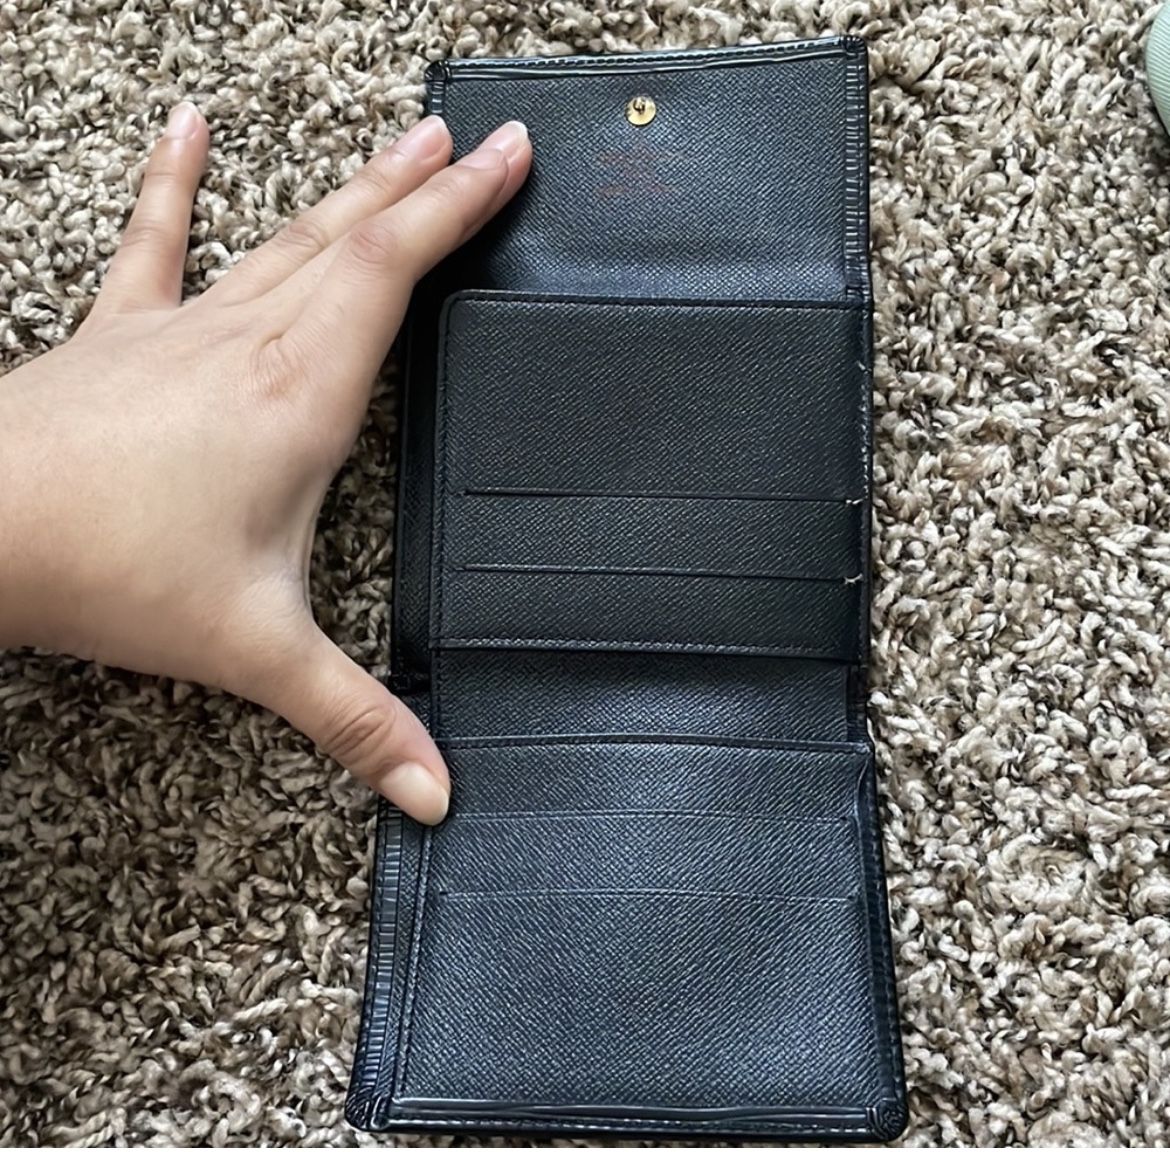 Louis Vuitton Epi Leather Wallet - Black Wallets, Accessories - LOU672586